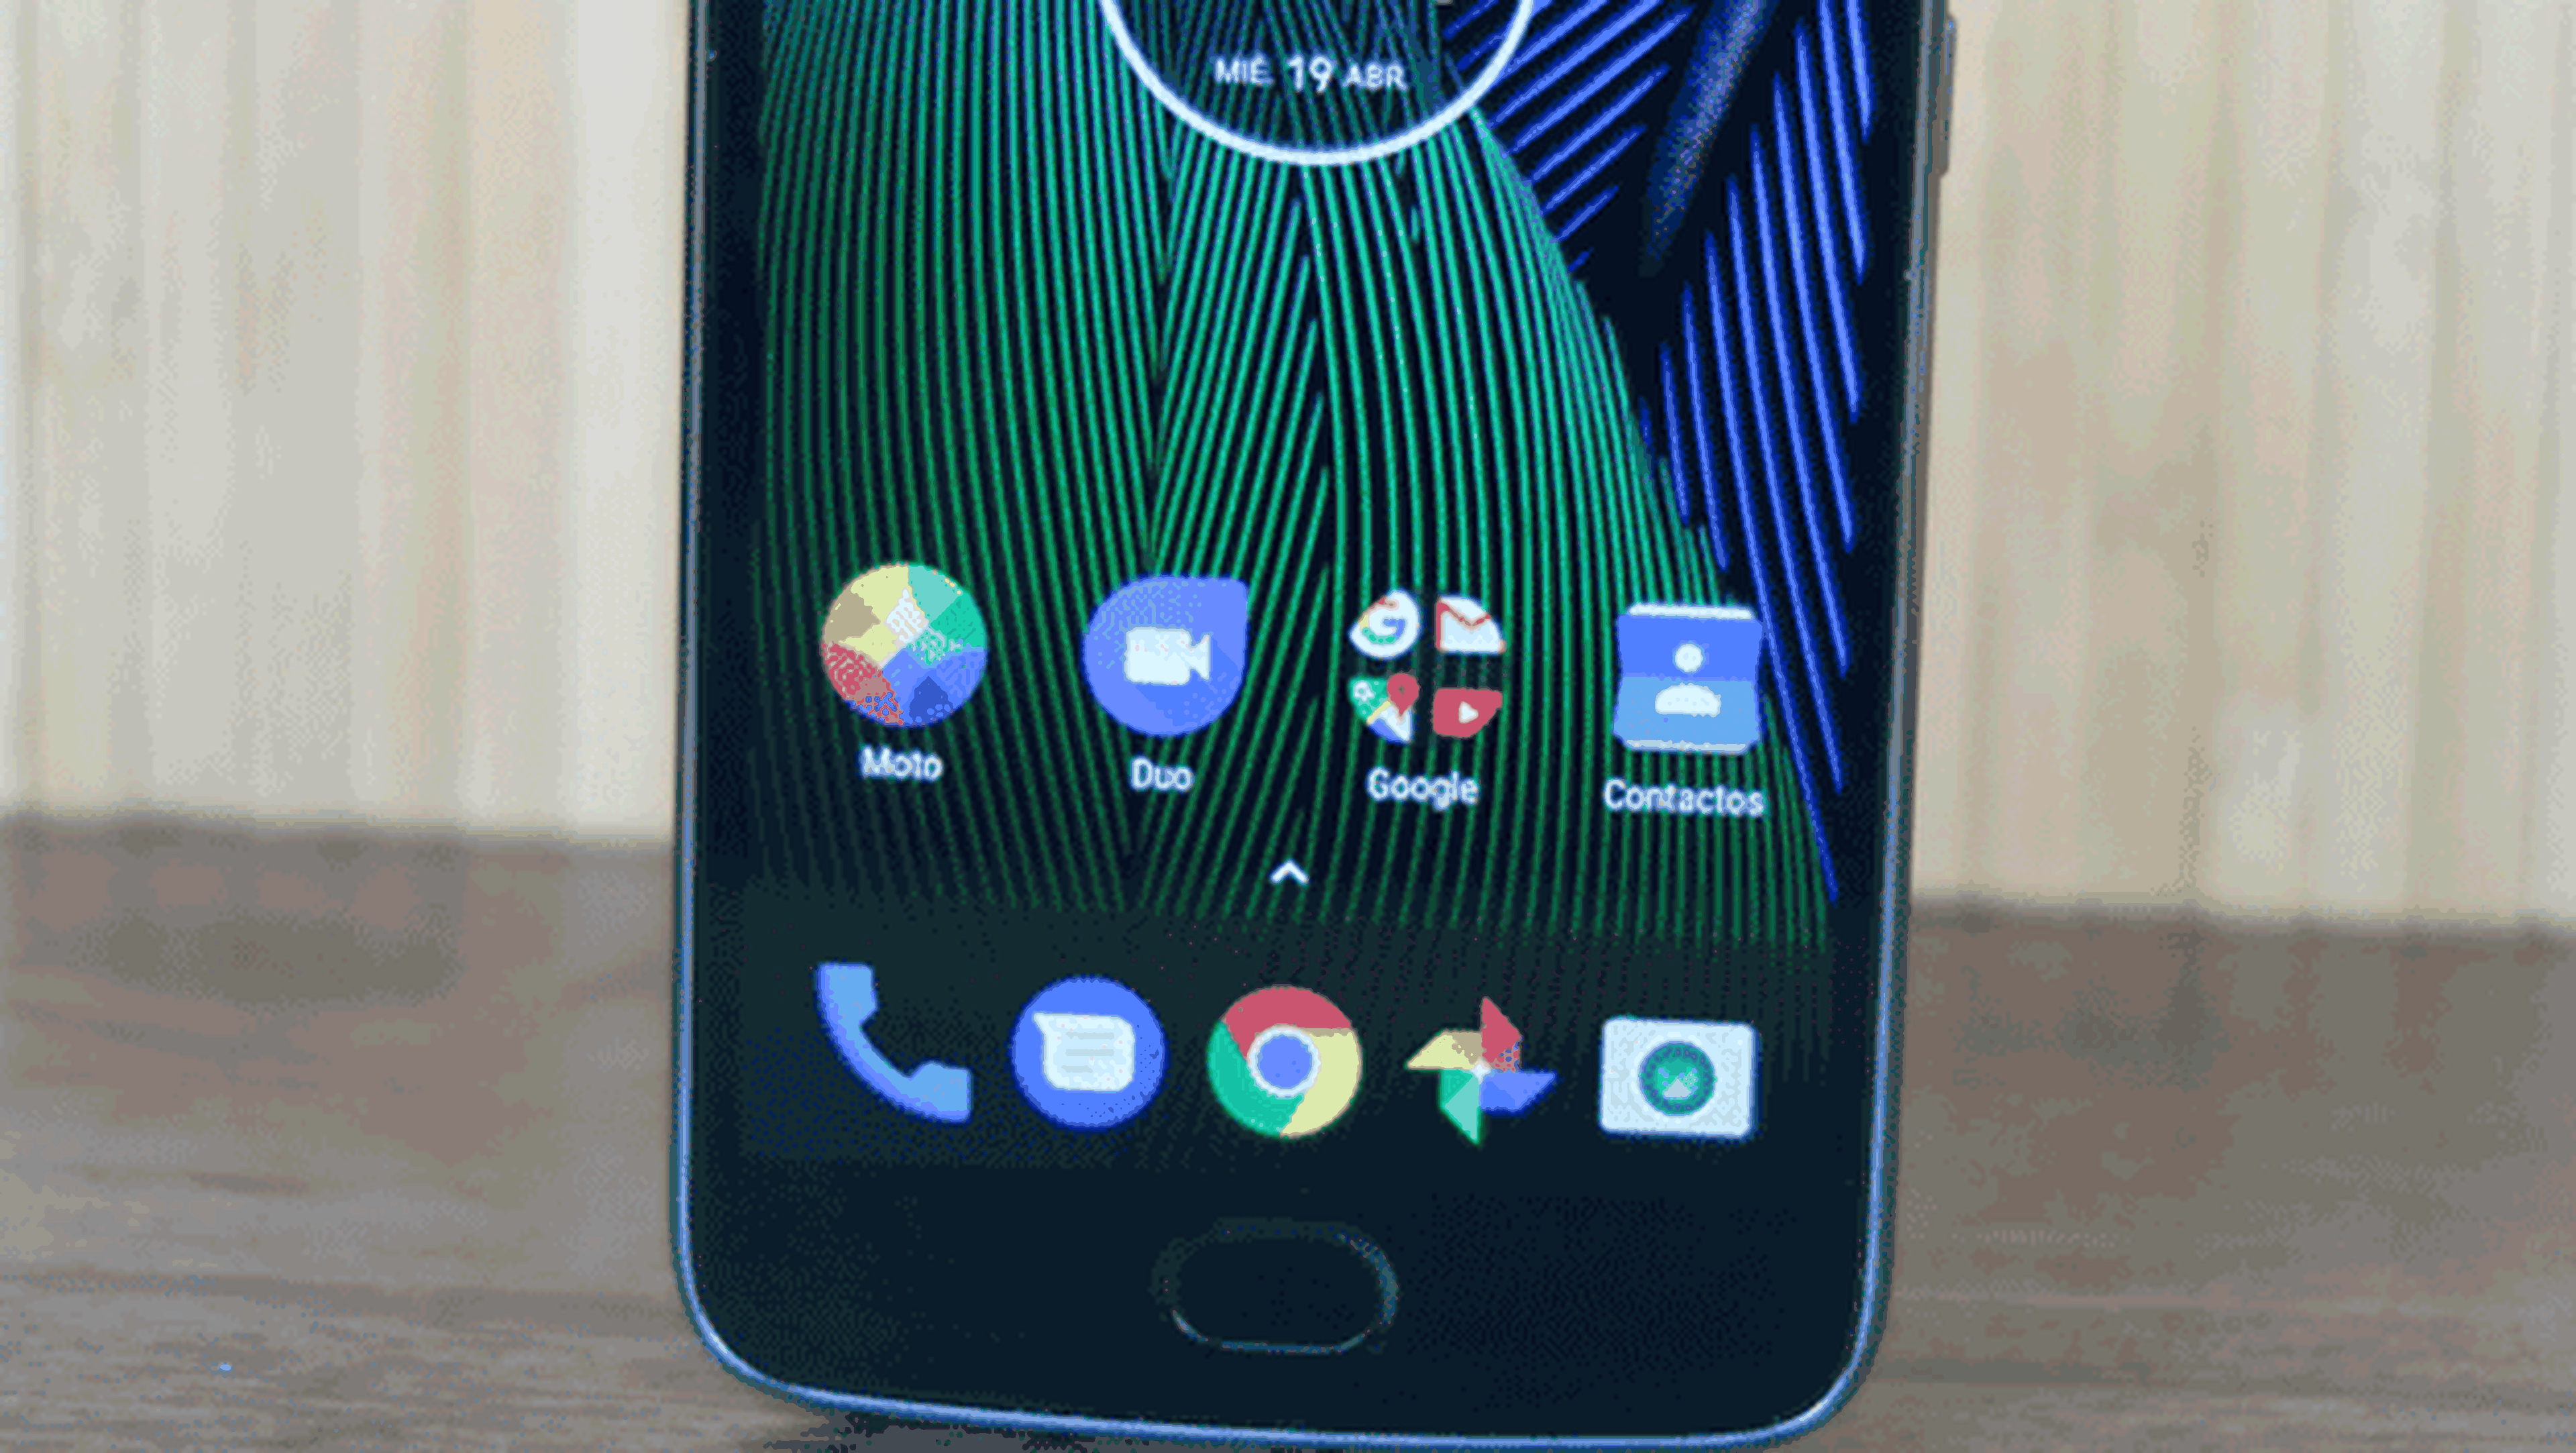 Móviles Motorola última versión Android